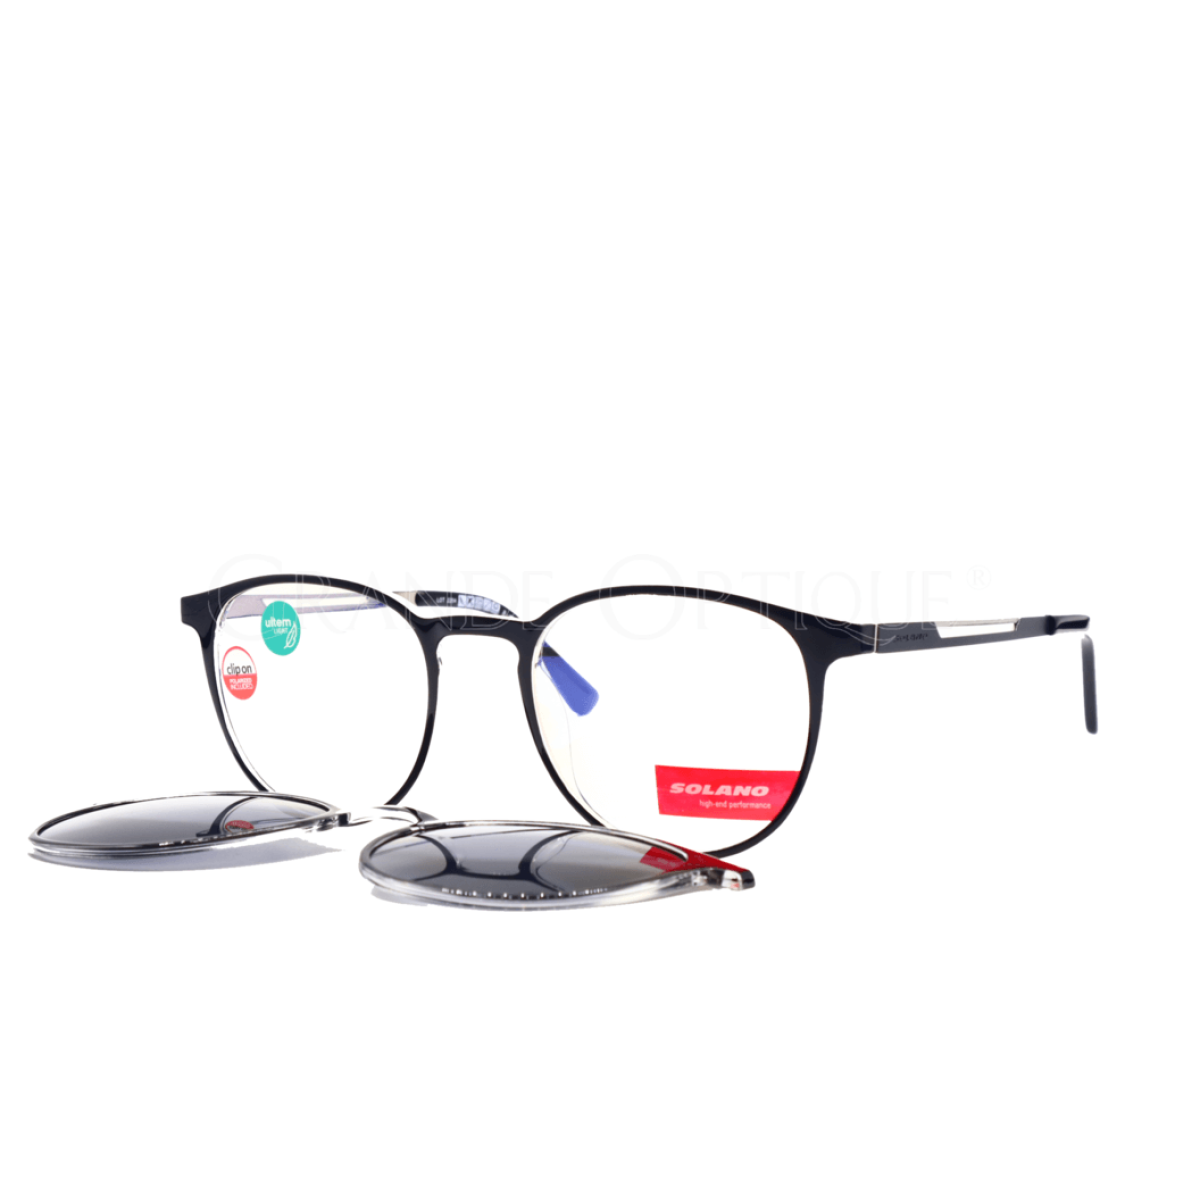 Rame de ochelari clip on Solano CL90158A